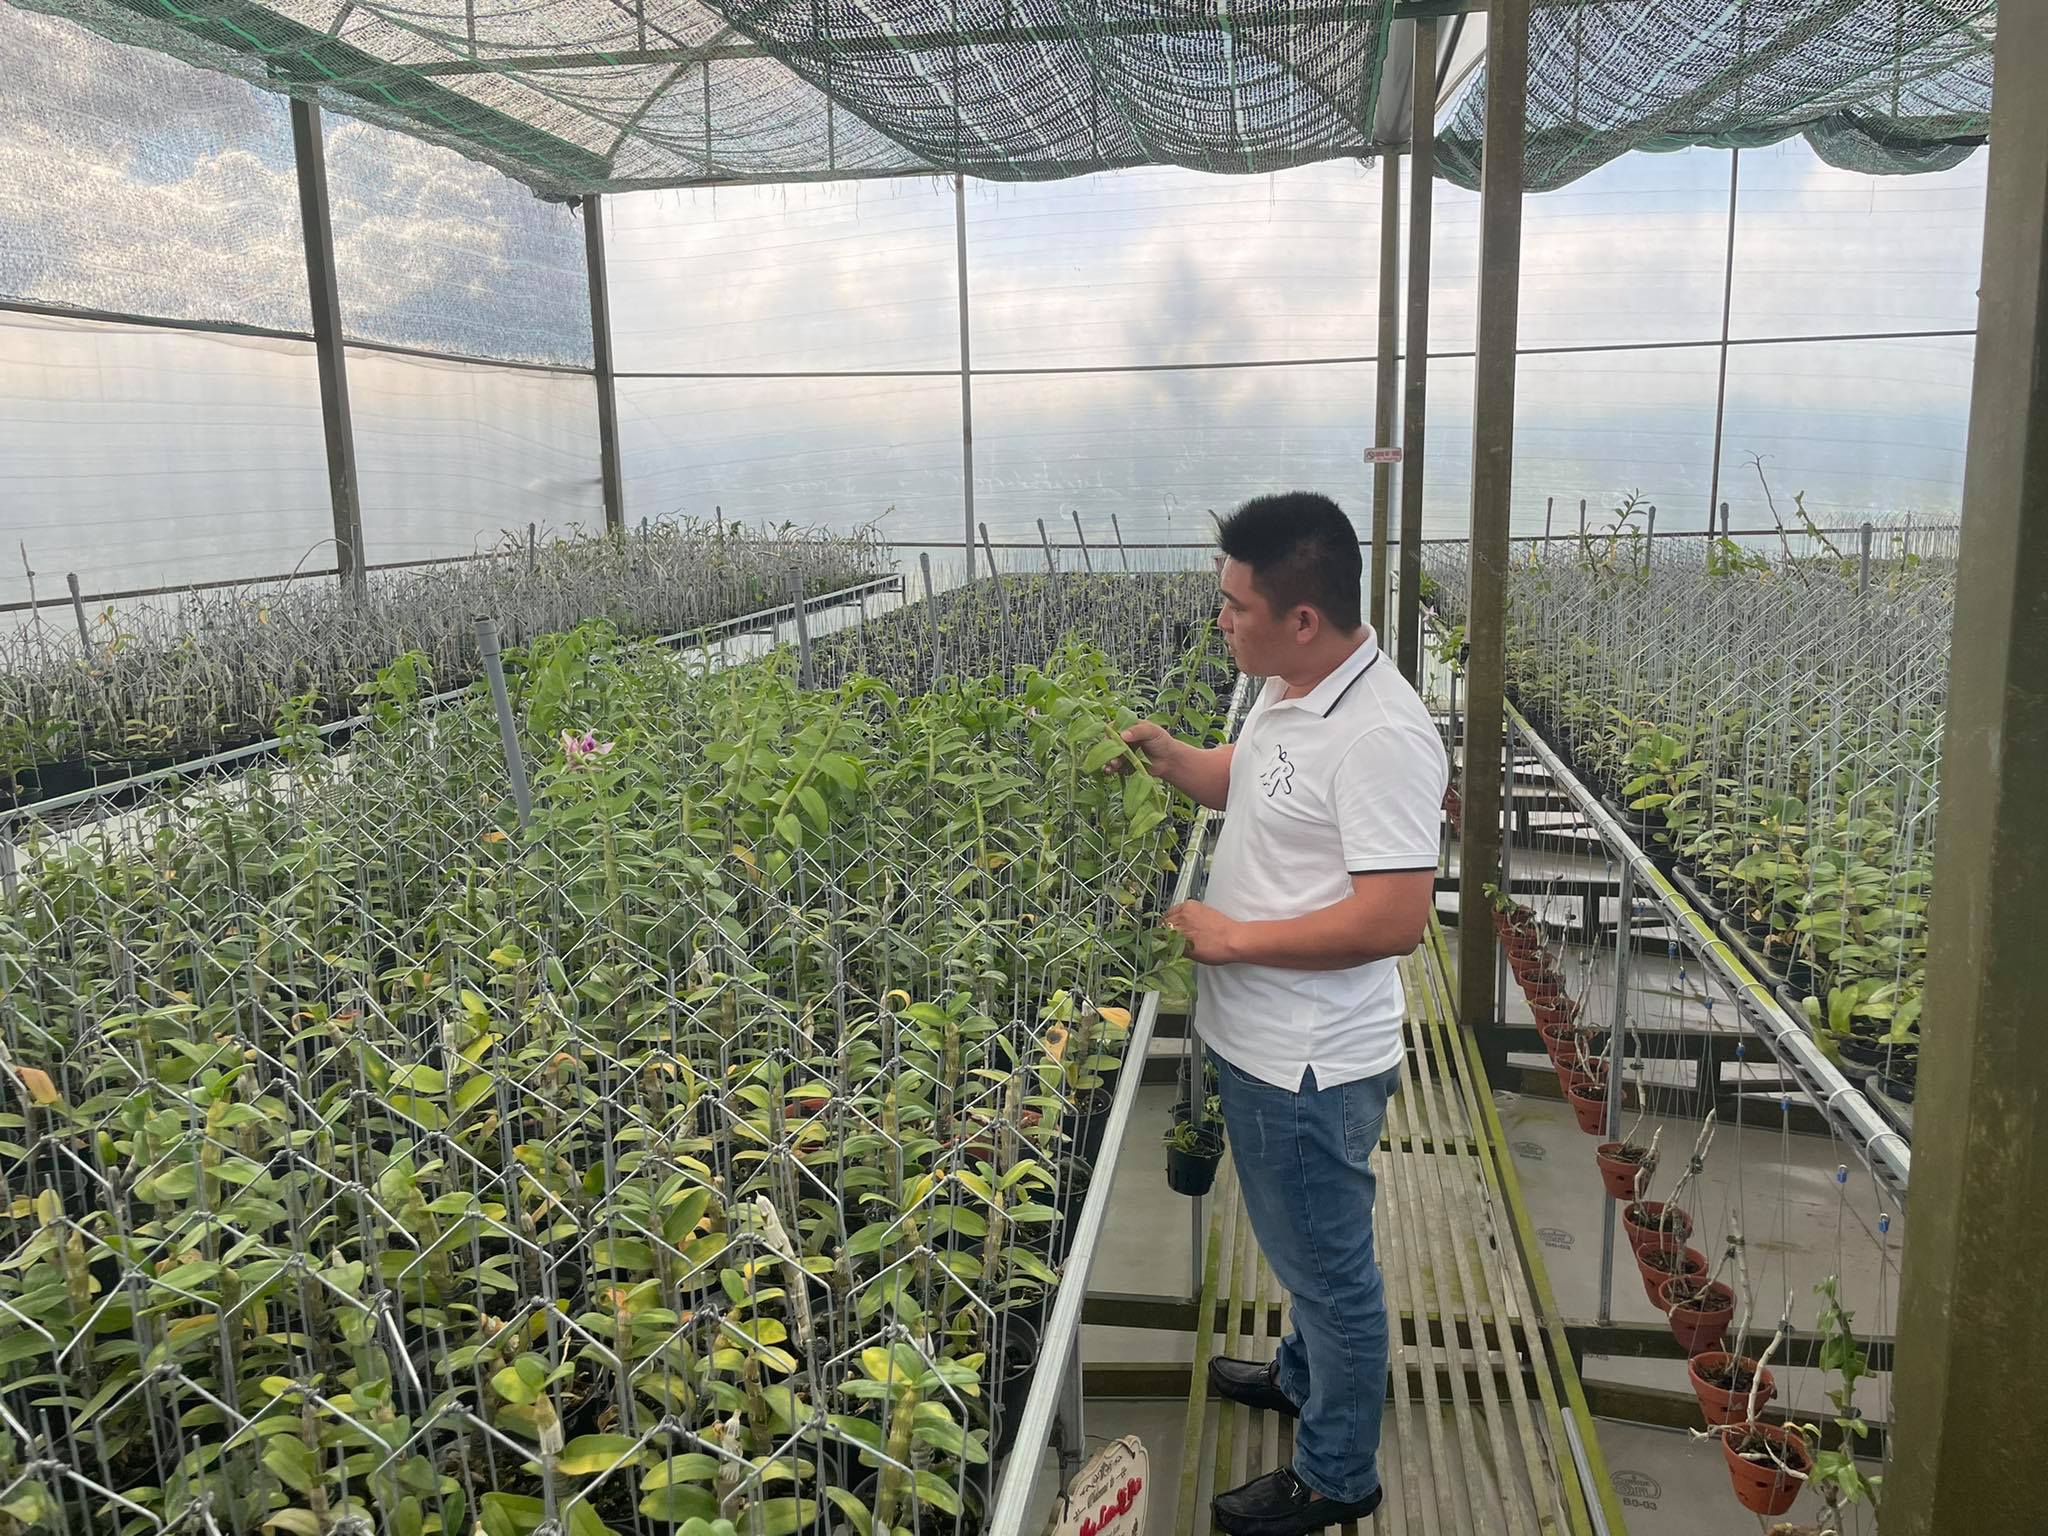 Khởi nghiệp nhiều gian nan, Lê Văn Nam sở hữu vườn lan đáng mơ ước